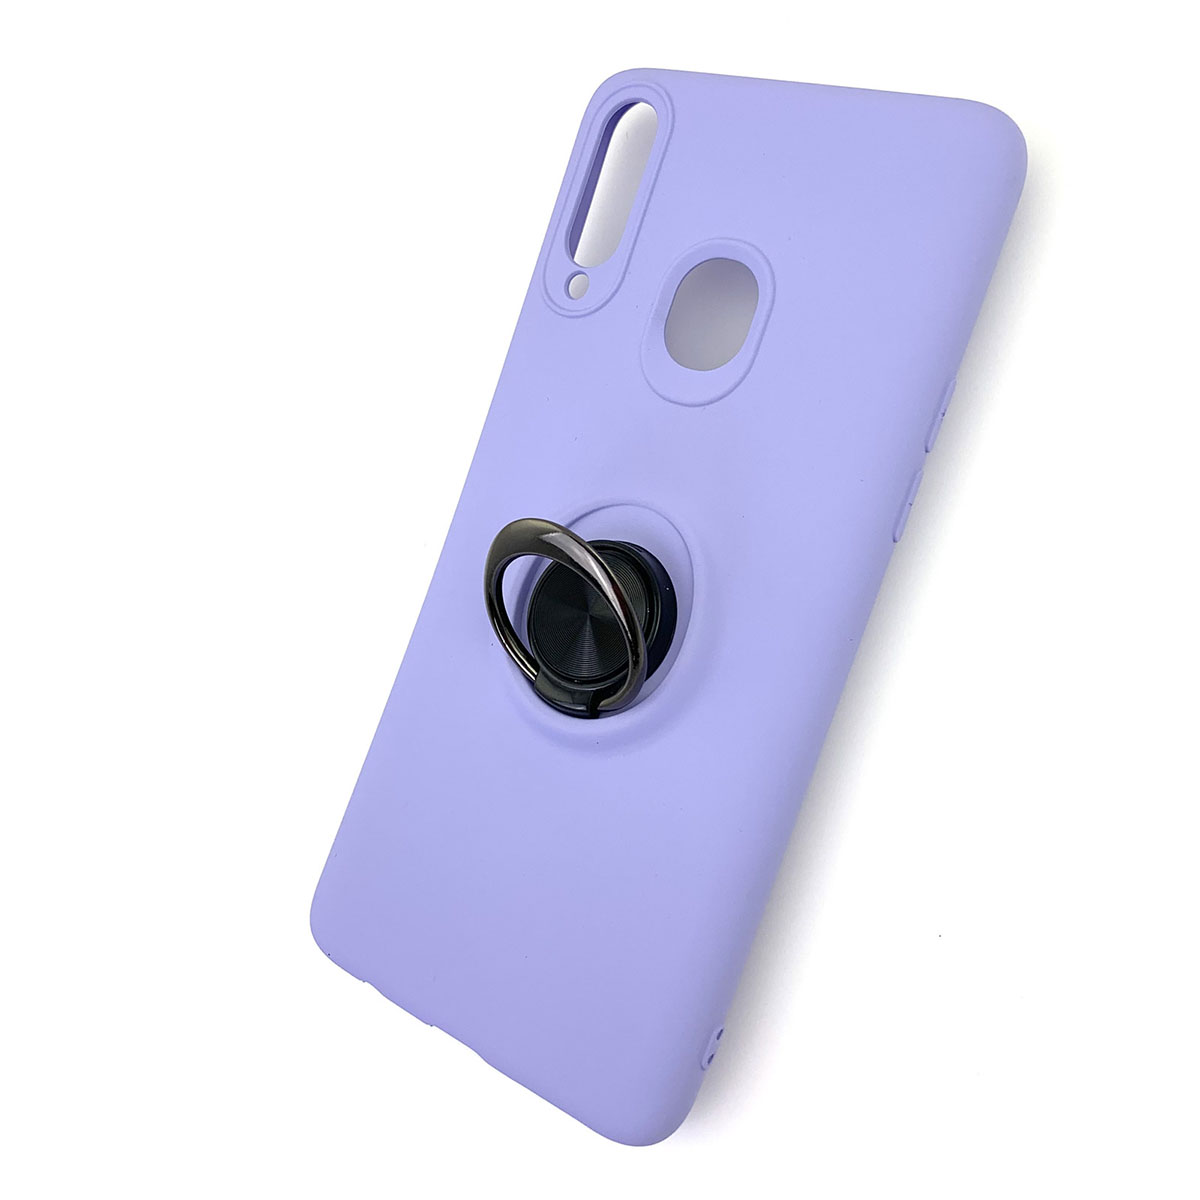 Чехол накладка для SAMSUNG Galaxy A20s (SM-A207), силикон, кольцо держатель, спиннер, цвет фиолетовый.